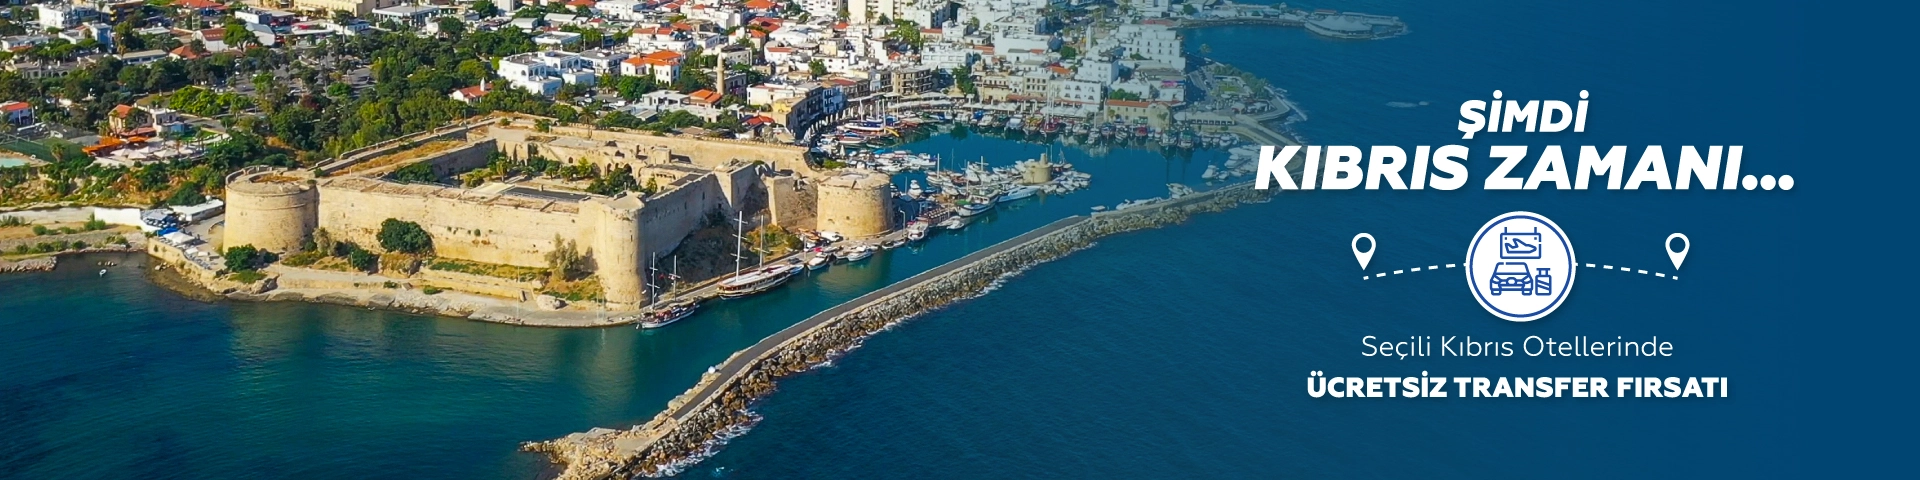 Kıbrıs Otellerinde Ücretsiz Transfer Fırsatı